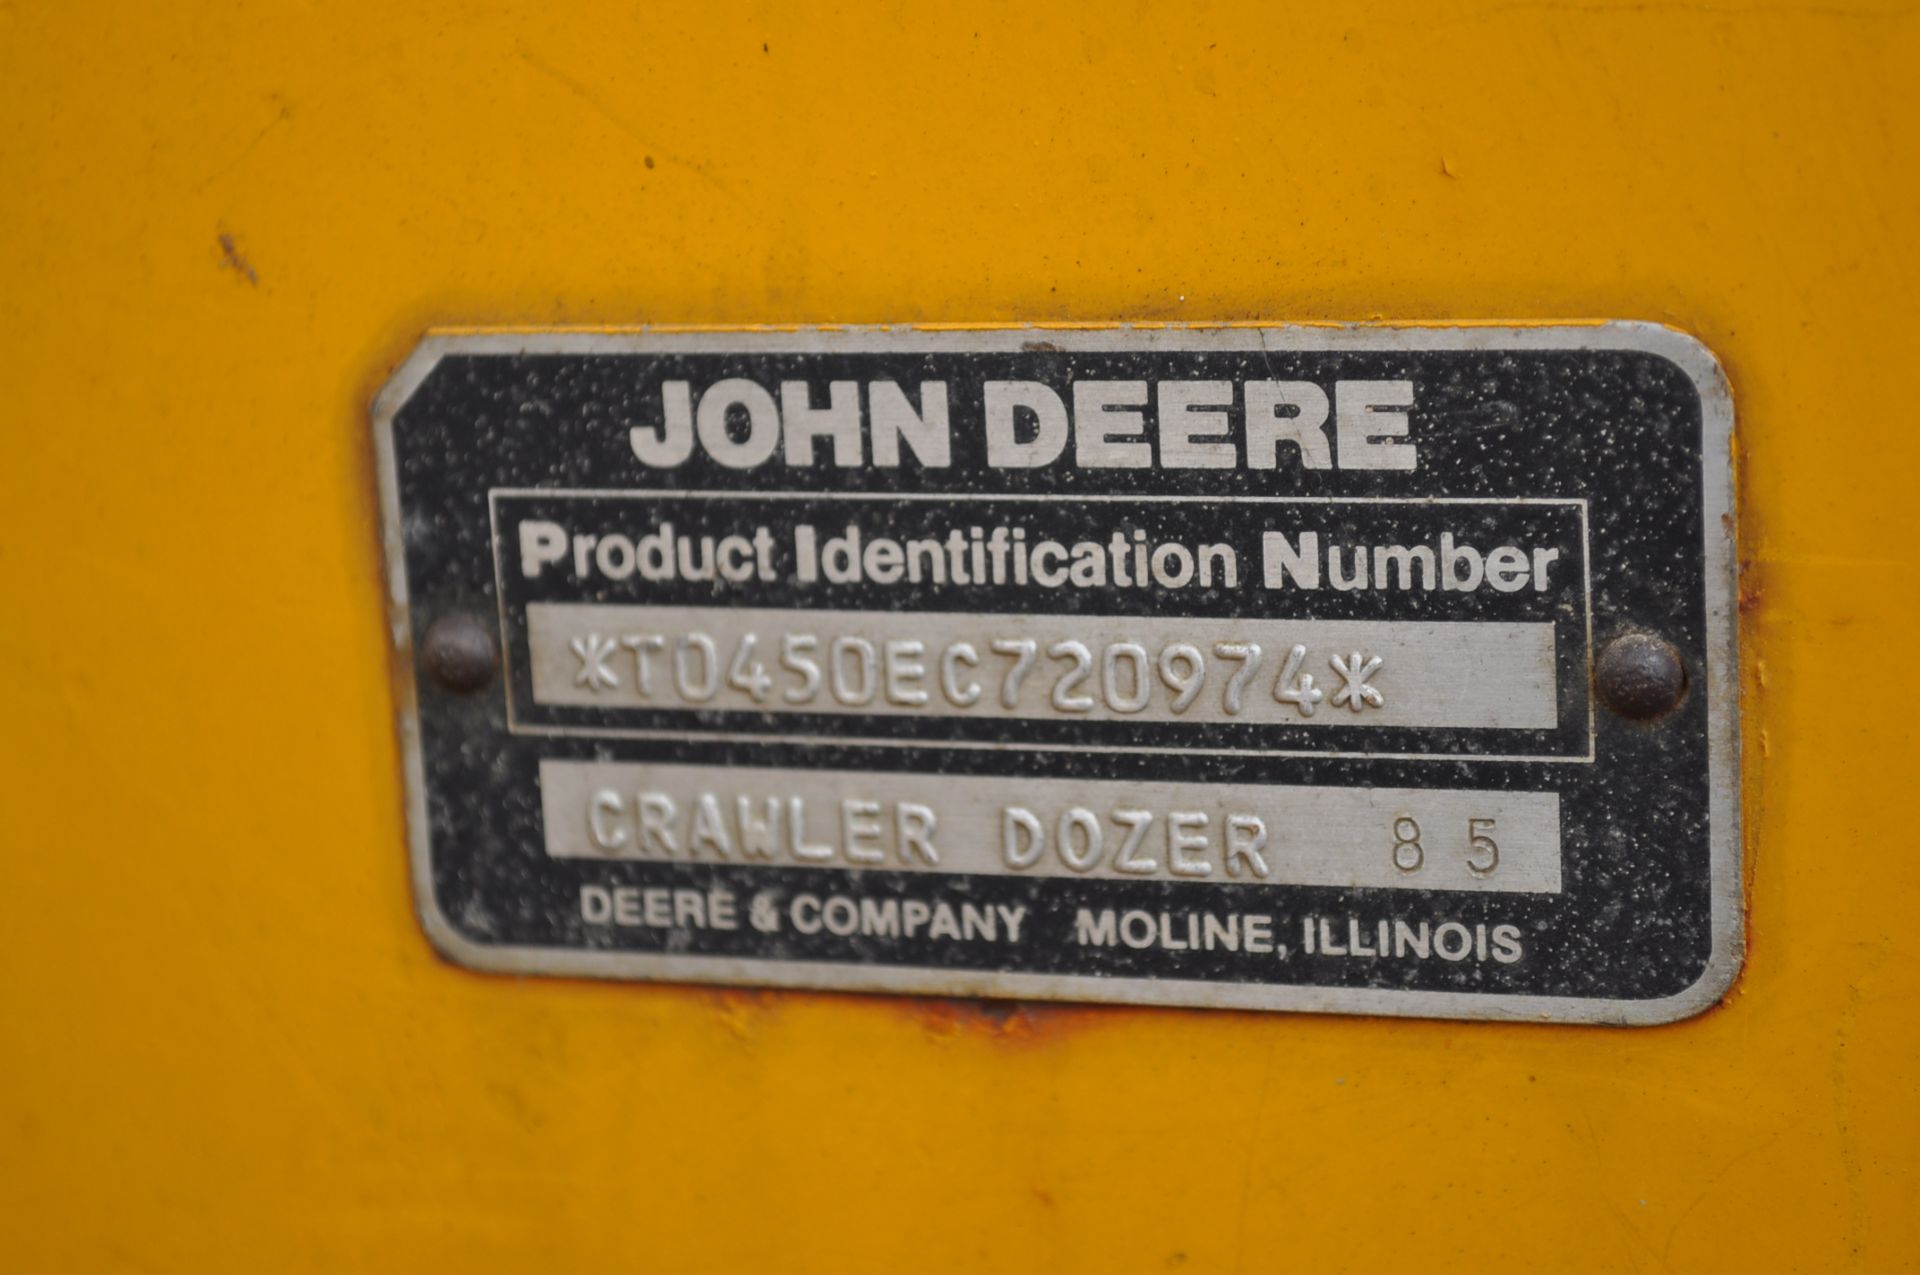 John Deere 450E dozer, 6 way blade, Hyster rear winch, 4 speed power shift, SN T0450EC720974 - Image 11 of 12